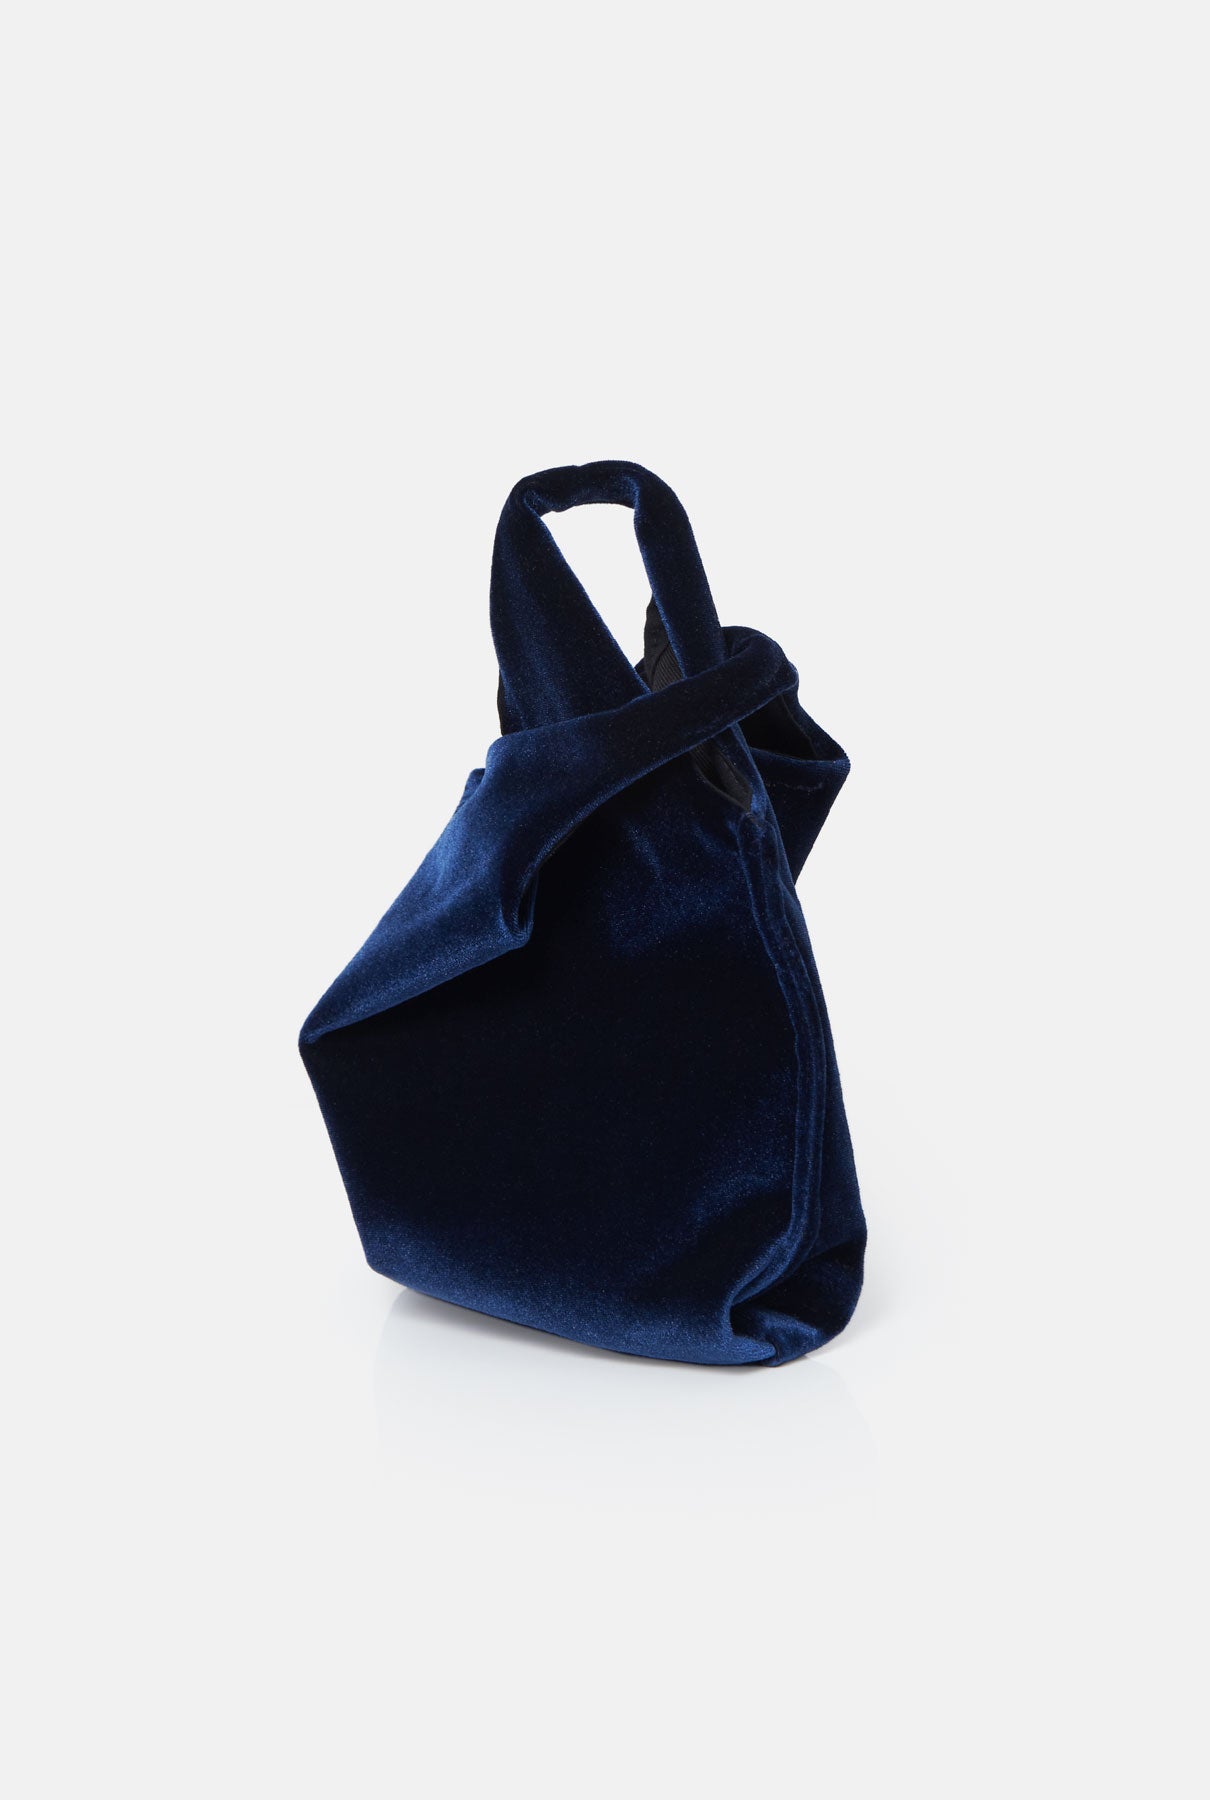 The baby julia bag new velvet navy Mini bags The Bag Lab 